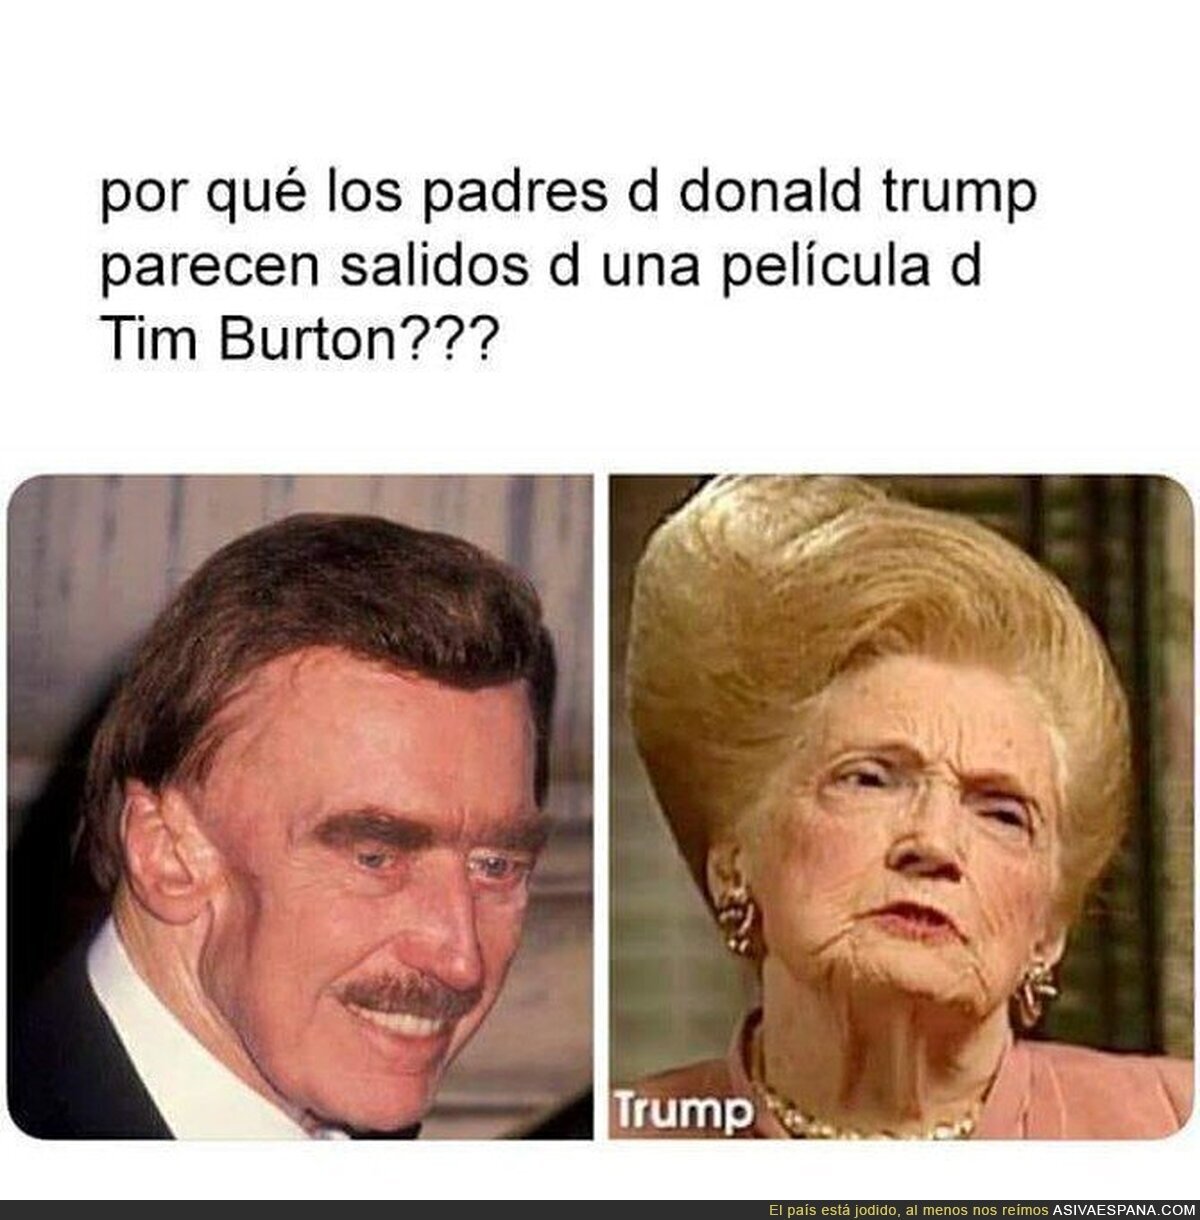 Los padres de Donald Trump